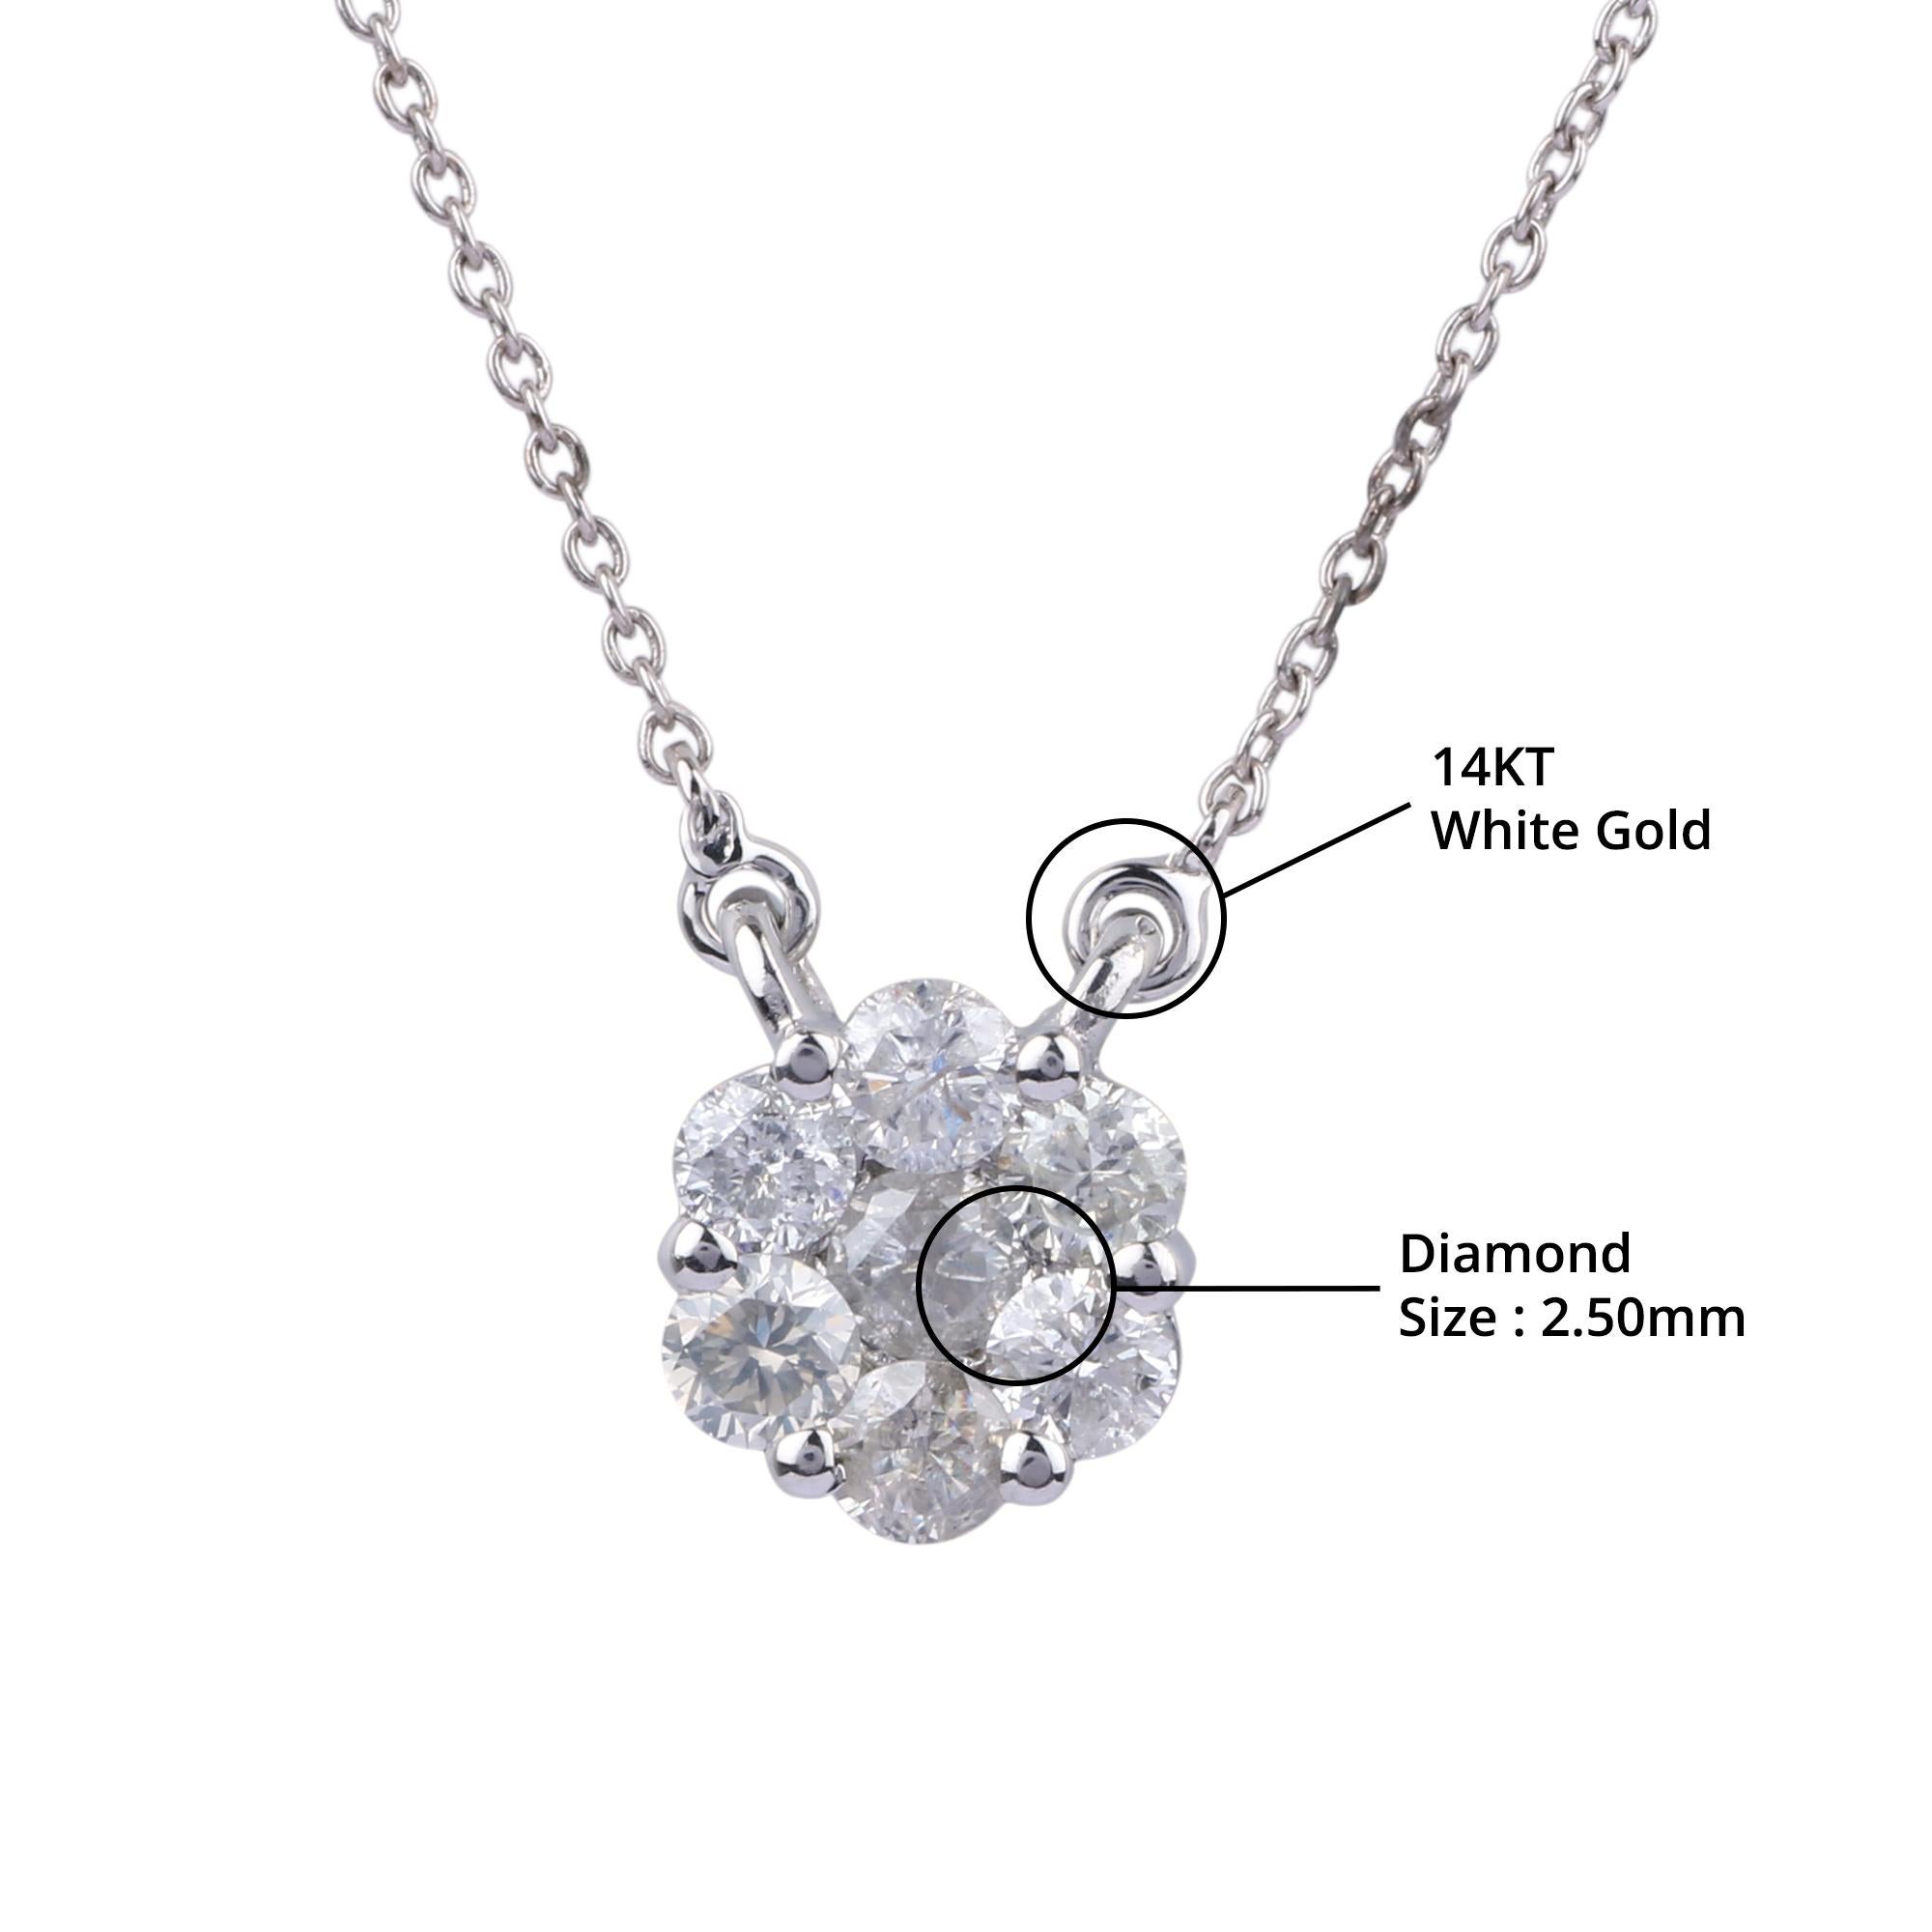 Détails de l'article:-

✦ SKU:- JNC00003WWW

✦ Matériau :- Or

✦ Pureté du métal : or blanc 14K

✦ Gemstone Specification:- 
✧ Diamant rond transparent (l1/H1) - 2.50 mm - 7 pièces


✦ Approx. Poids du diamant clair : 0,481 carat


✦ Approx. Poids